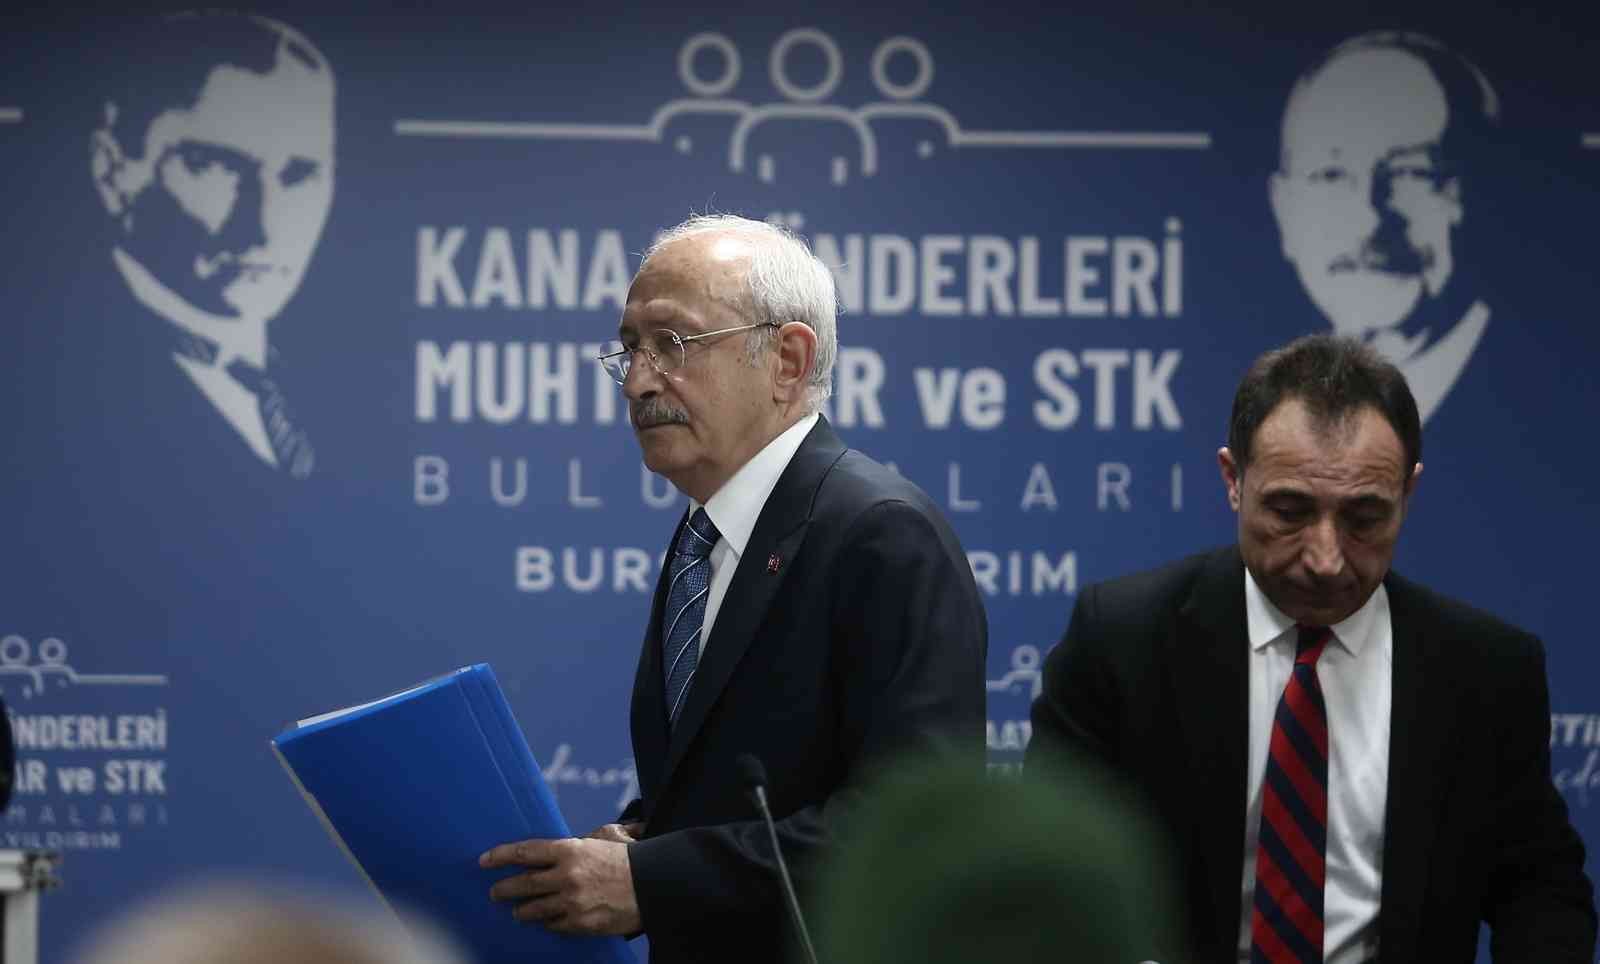 Chp Genel Başkanı Kılıçdaroğlu: “6,5 Milyon Genç Sandığa Gittiğinde Türkiyenin Geleceğini Değiştirecek”